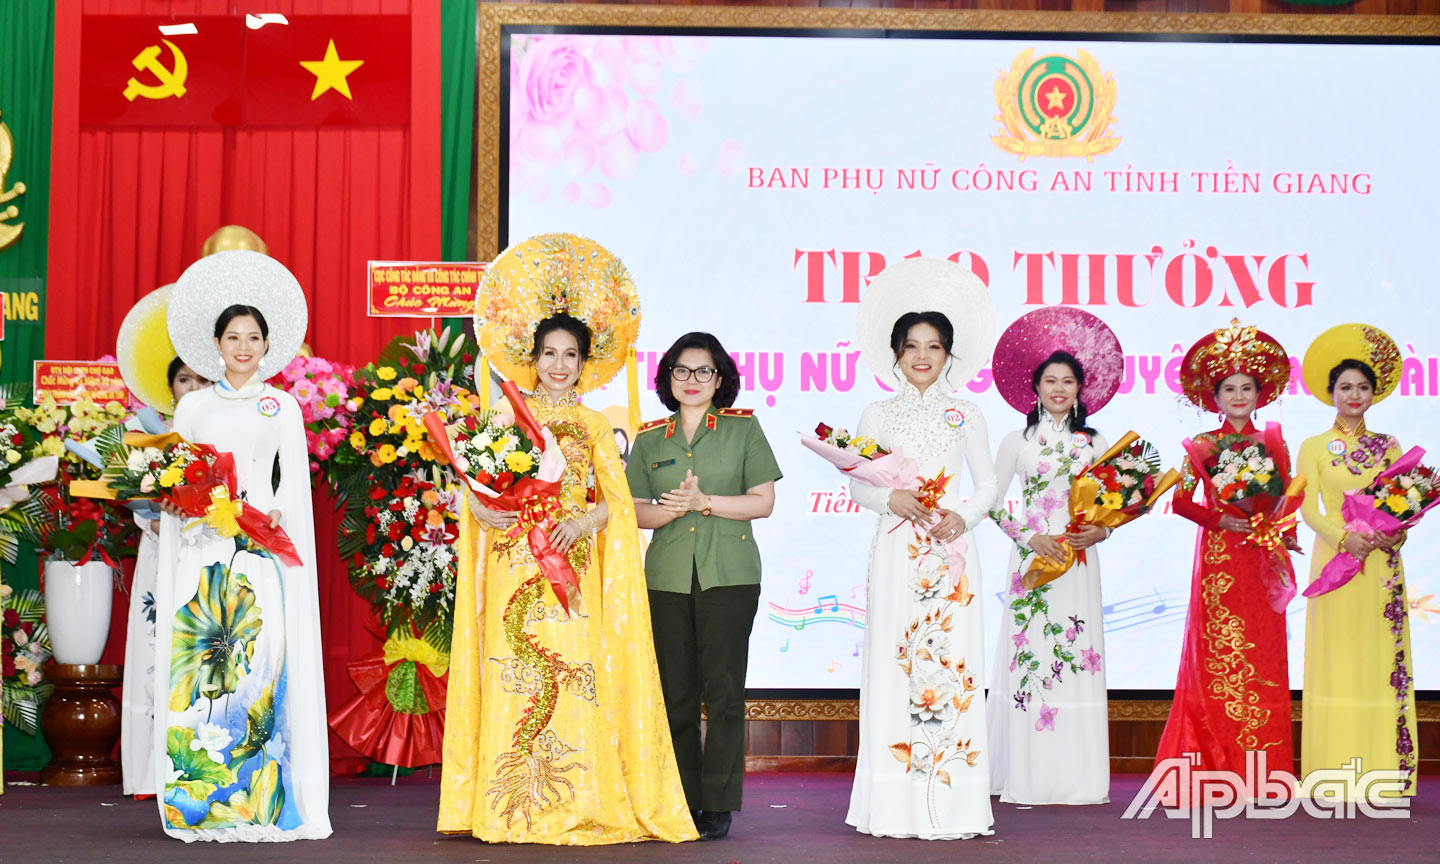 Thiếu tướng Ngô Hoài Thu, Phó Cục trưởng cục Công tác đảng và công tác chính trị, Trưởng Ban Phụ nữ Công an nhân dân trao thưởng cho thí sinh đạt giải nhất Hội thi “Phụ nữ Công an duyên dáng, tài năng”.